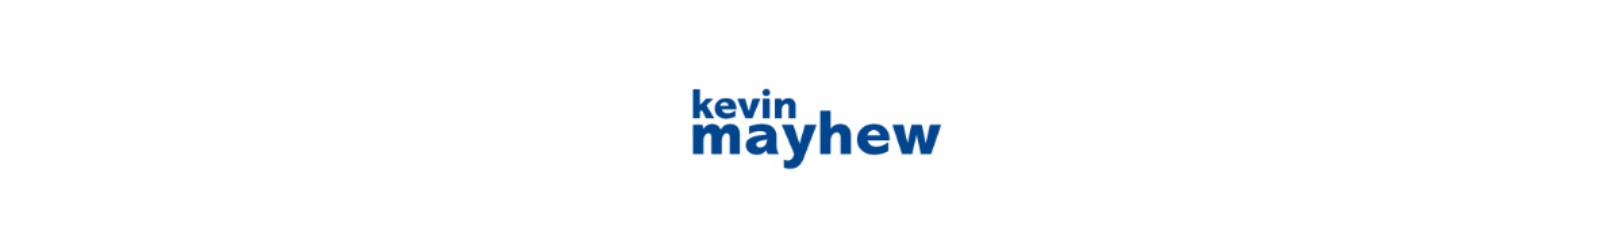 Kevin Mayhew